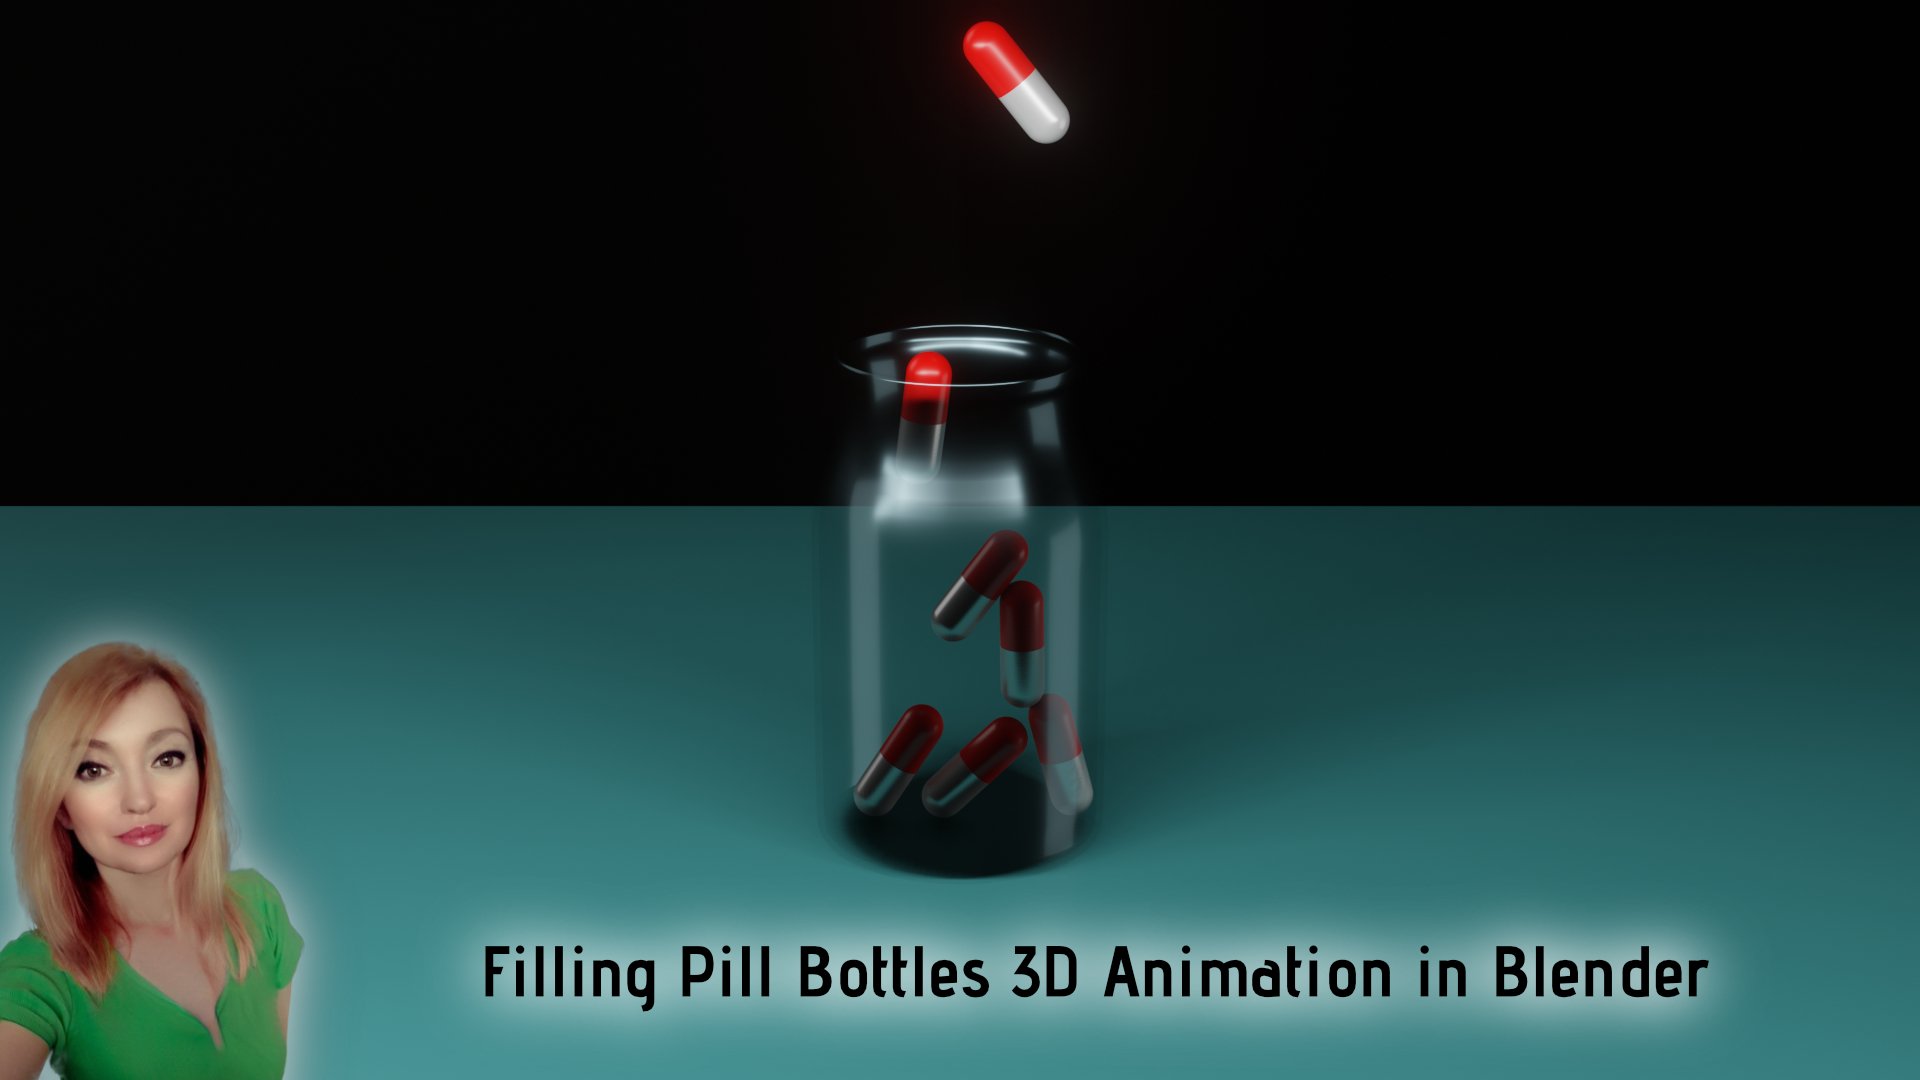 آموزش انیمیشن سه بعدی Filling Pill Bottles در بلندر